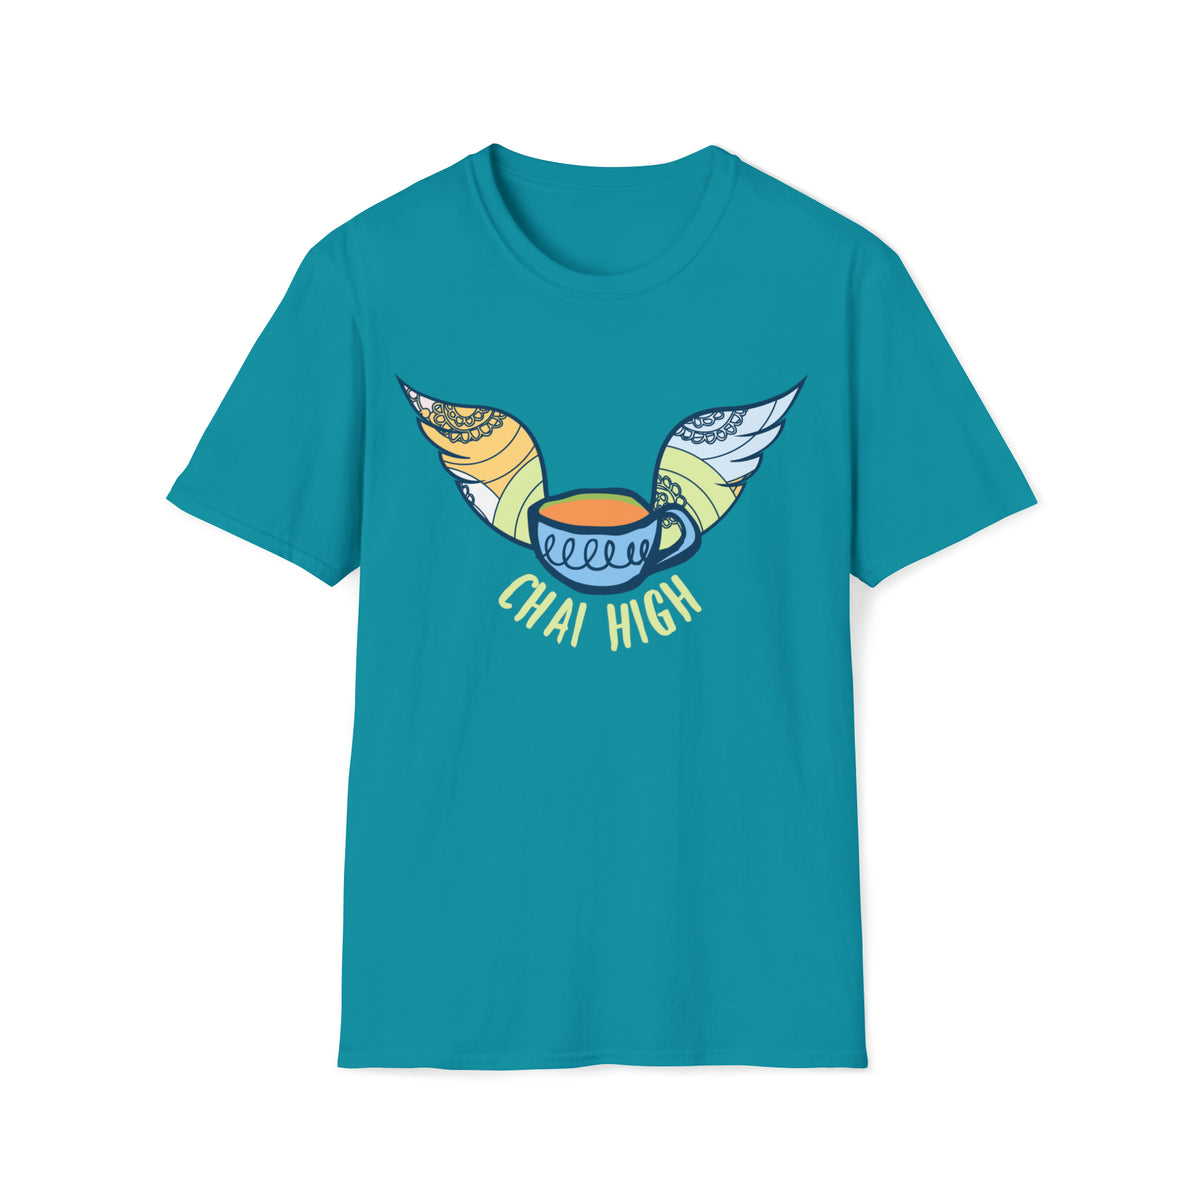 Chai High Chai Tea Shirt | Chai Tea Lover Shirt |  Tea Lover Gift | Unisex Soft Style T-shirt